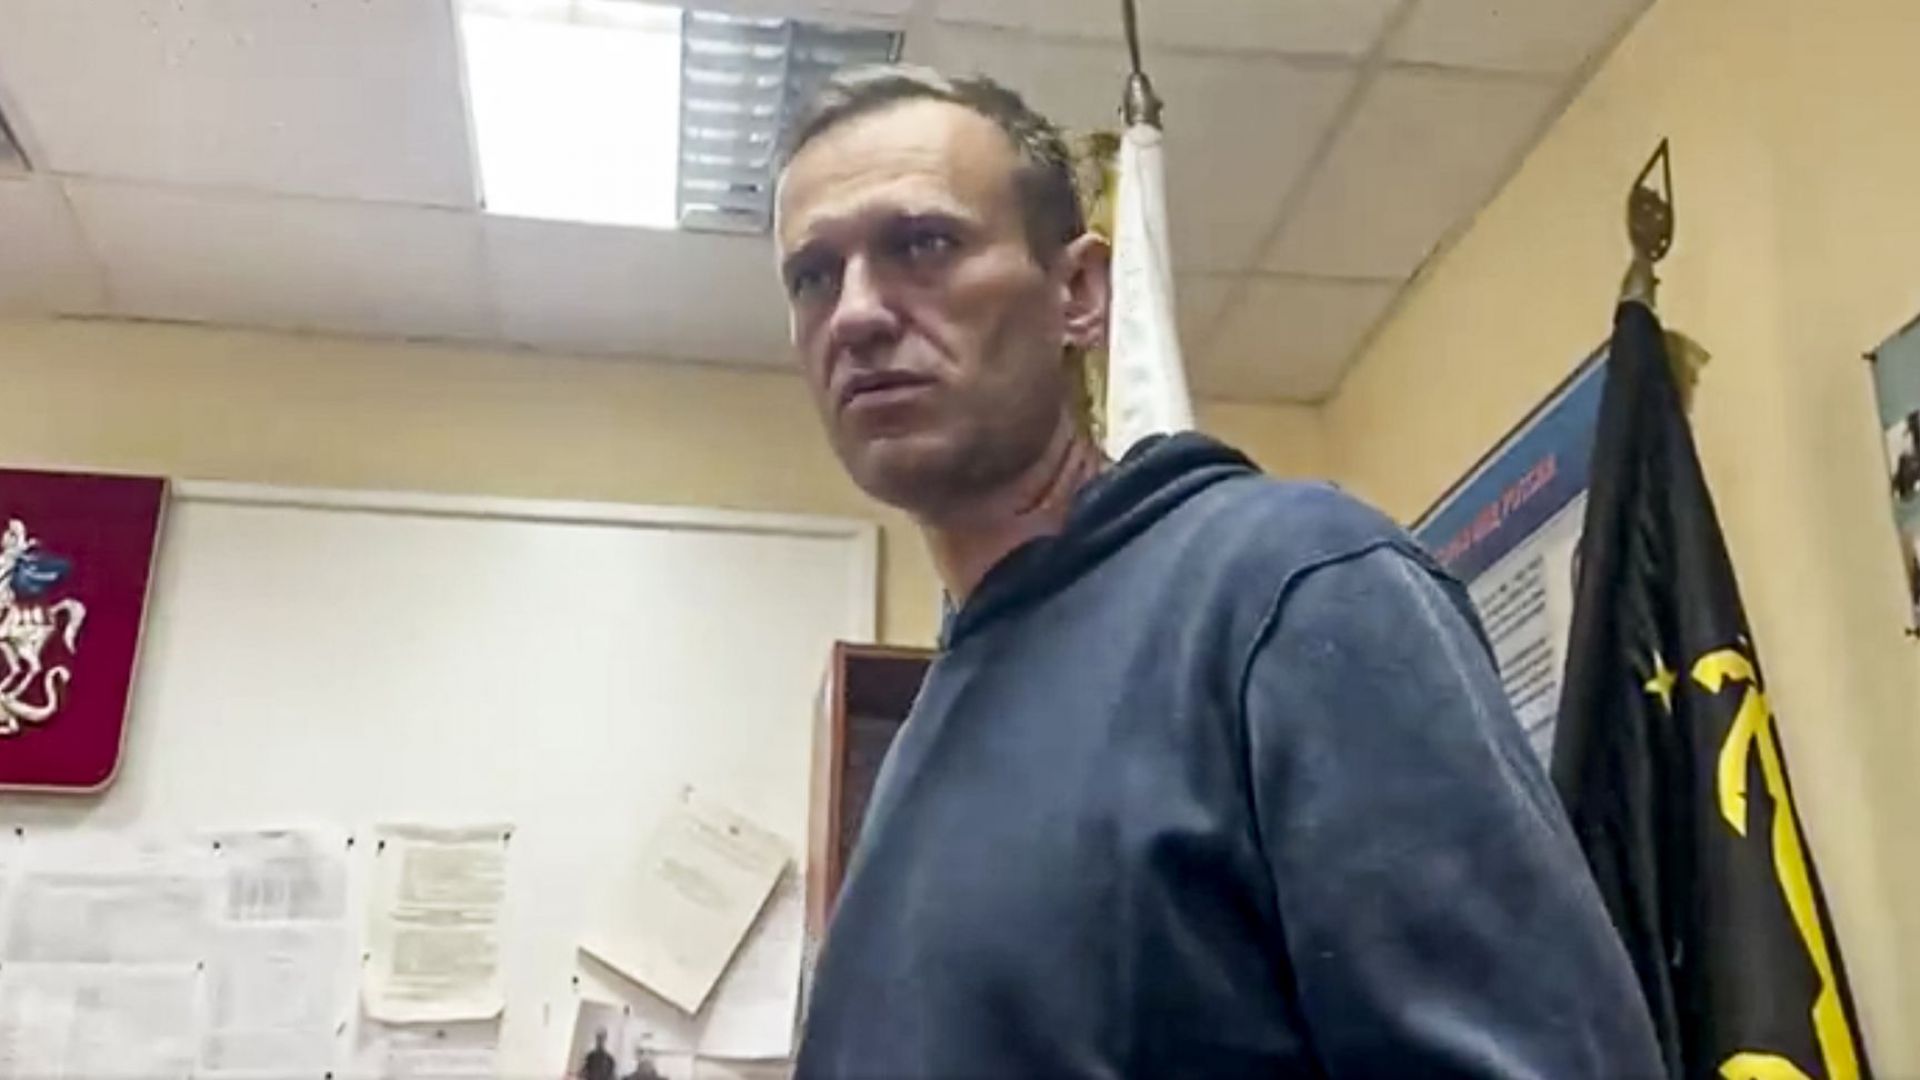 Руската прокуратура ще поиска условната присъда на Навални да стане ефективна